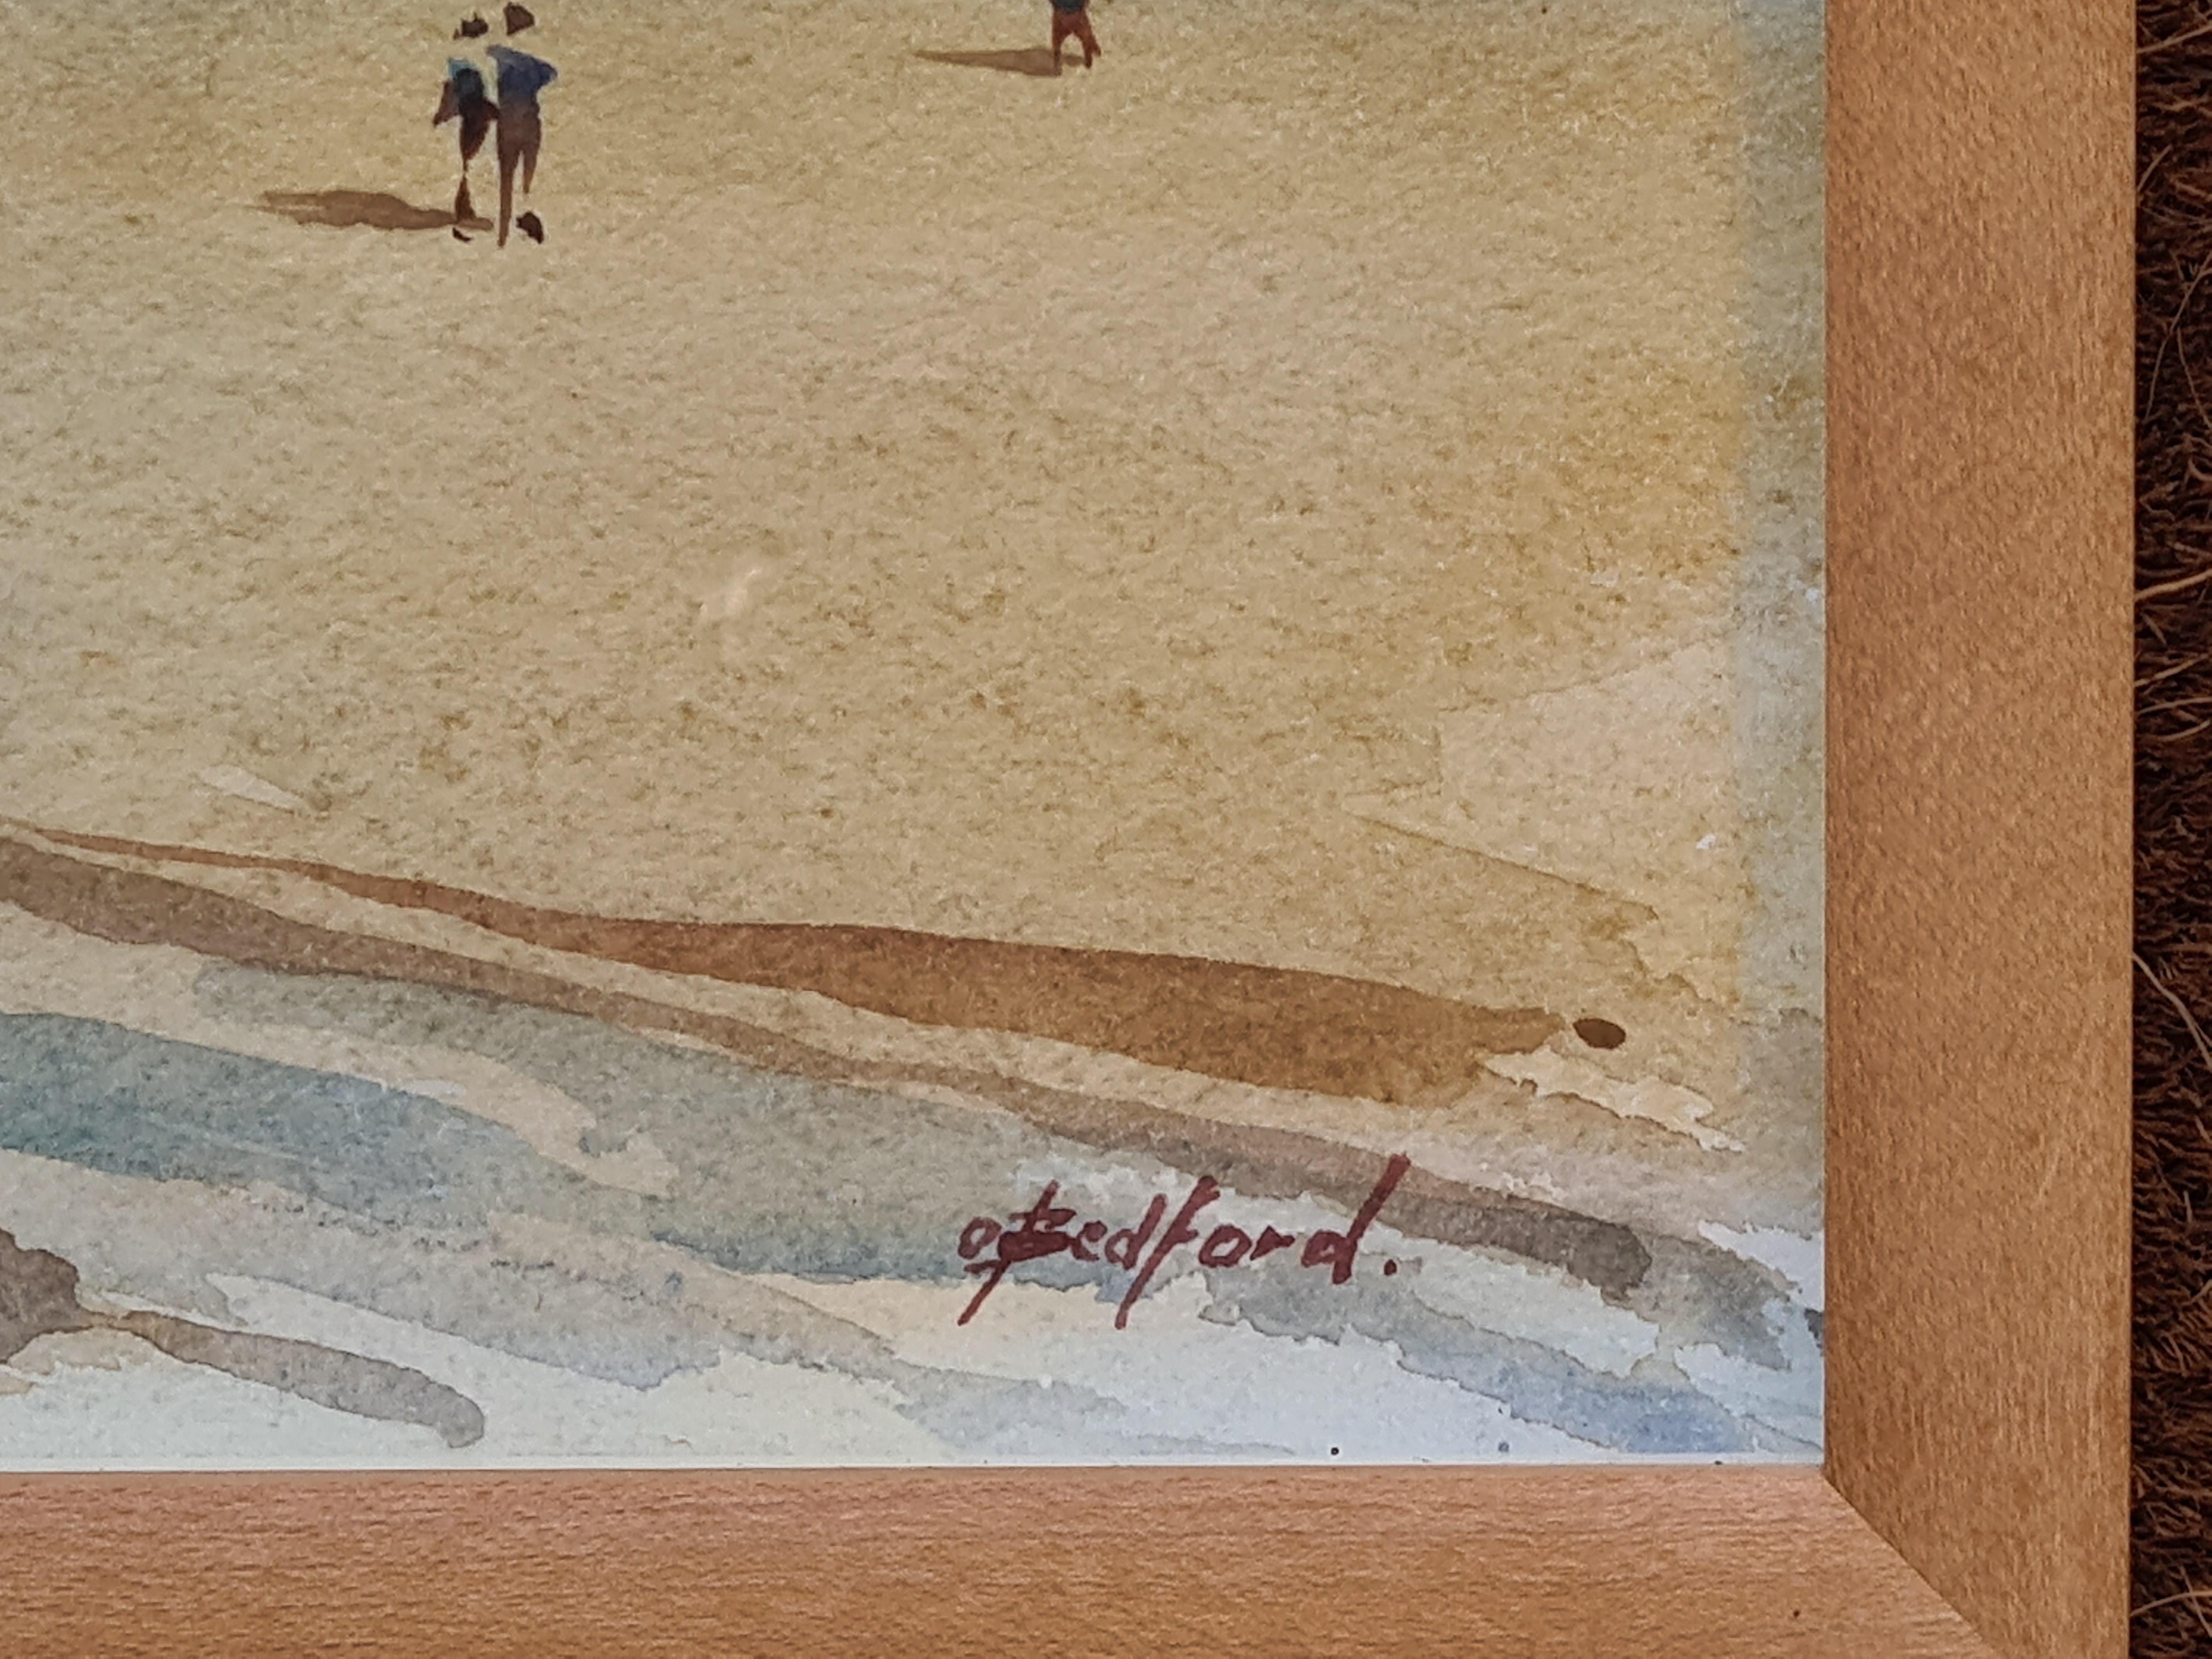 Aquarell auf Papier mit einer Strandszene in Cornwall von Oliver Bedford. Signiert unten rechts. Titel und Standort auf einem Label der Rowley Gallery, Kensington, London. Präsentiert in benutzerdefinierten Holzrahmen unter Glas.

Eine bezaubernde